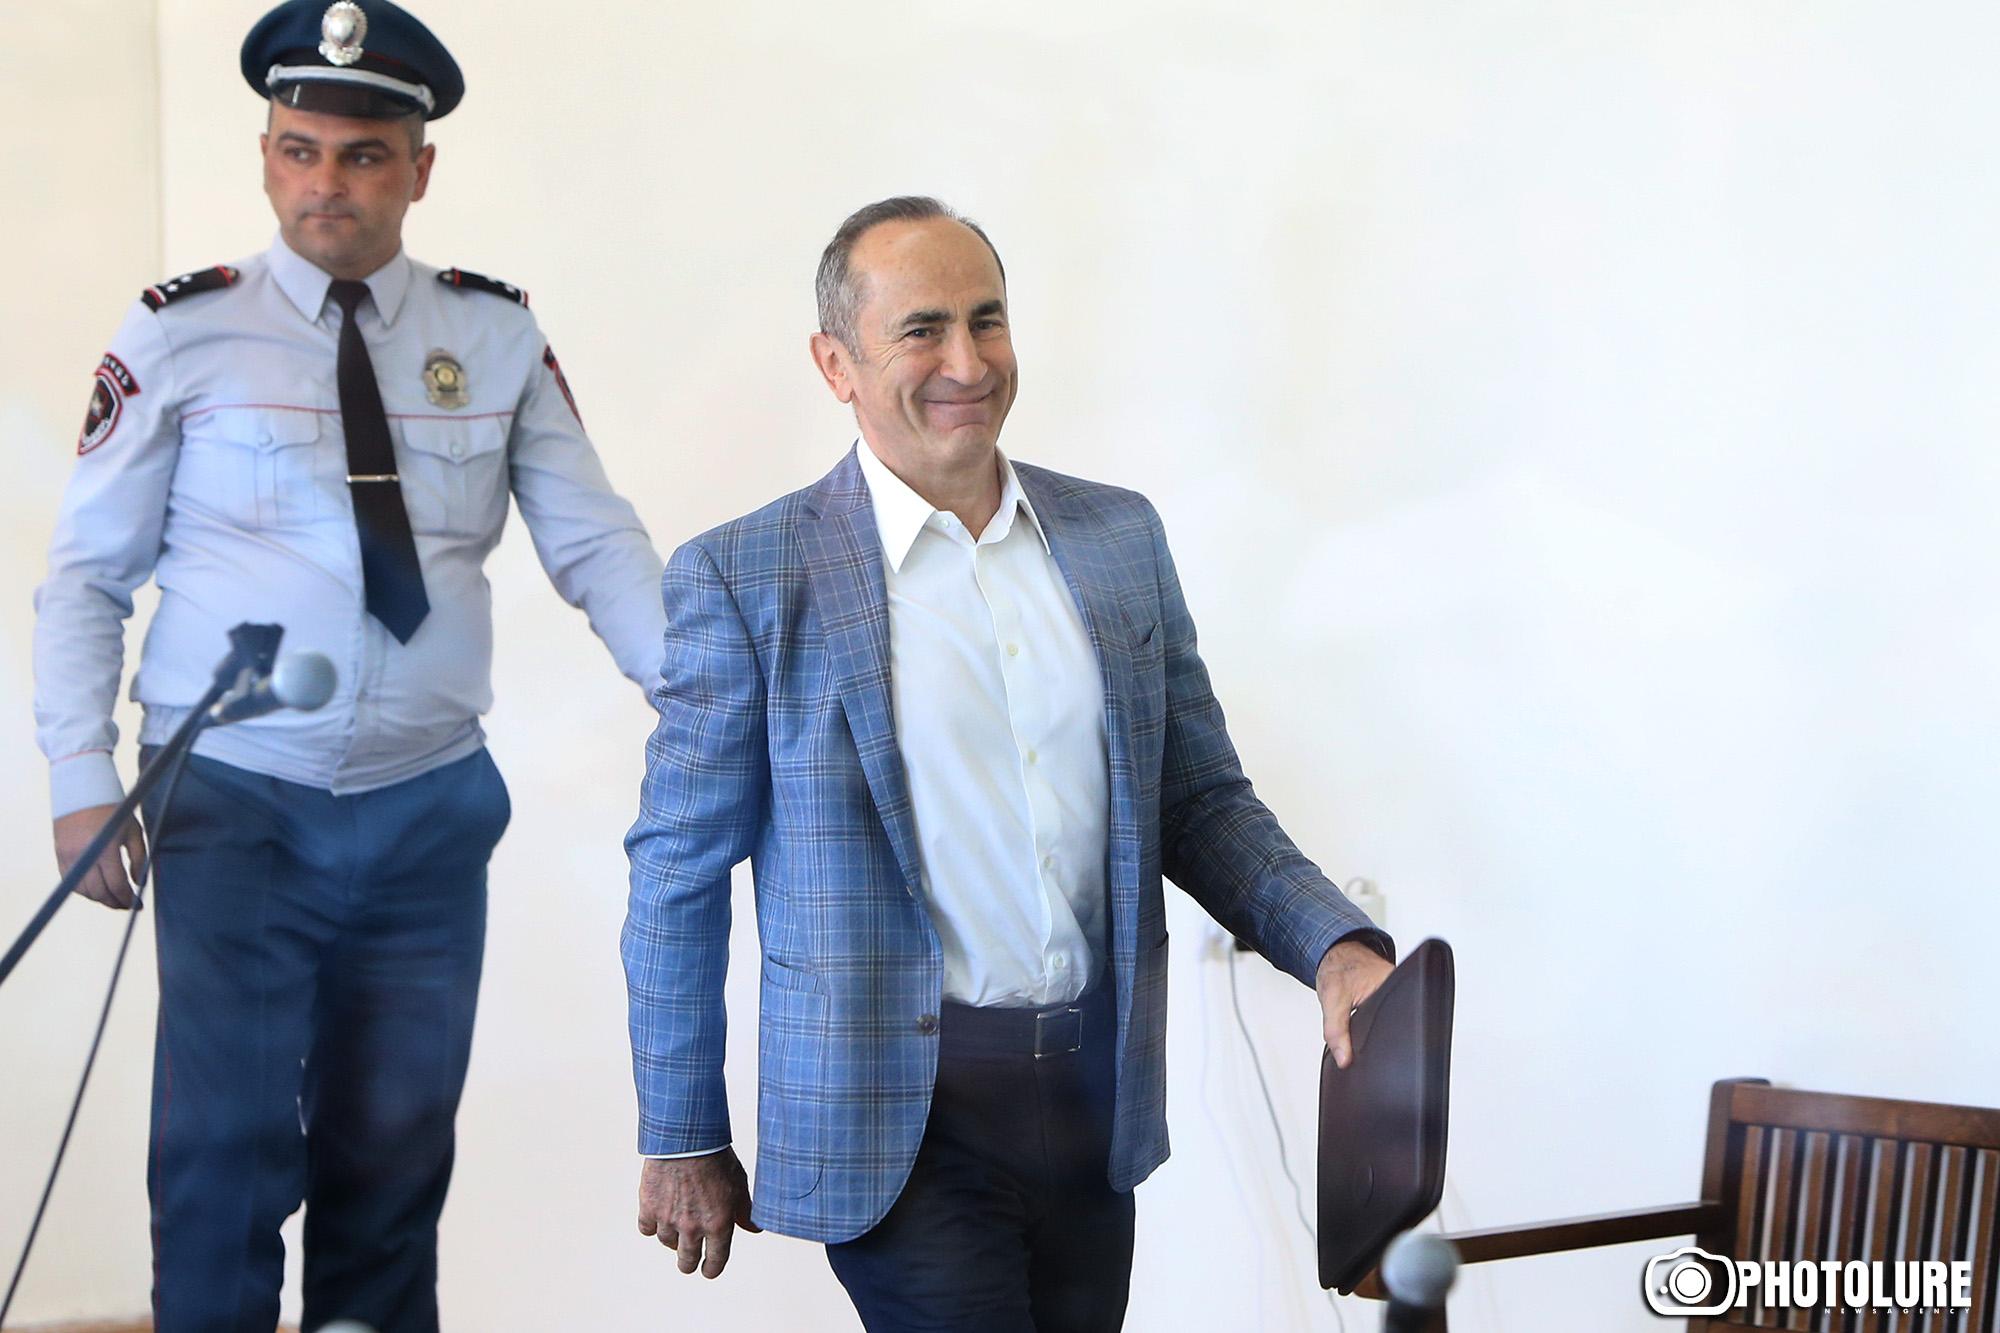 Քոչարյանին գրավի դիմաց ազատ արձակելու միջնորդության վերաբերյալ որոշումը կհրապարակվի նոյեմբերի 7-ին